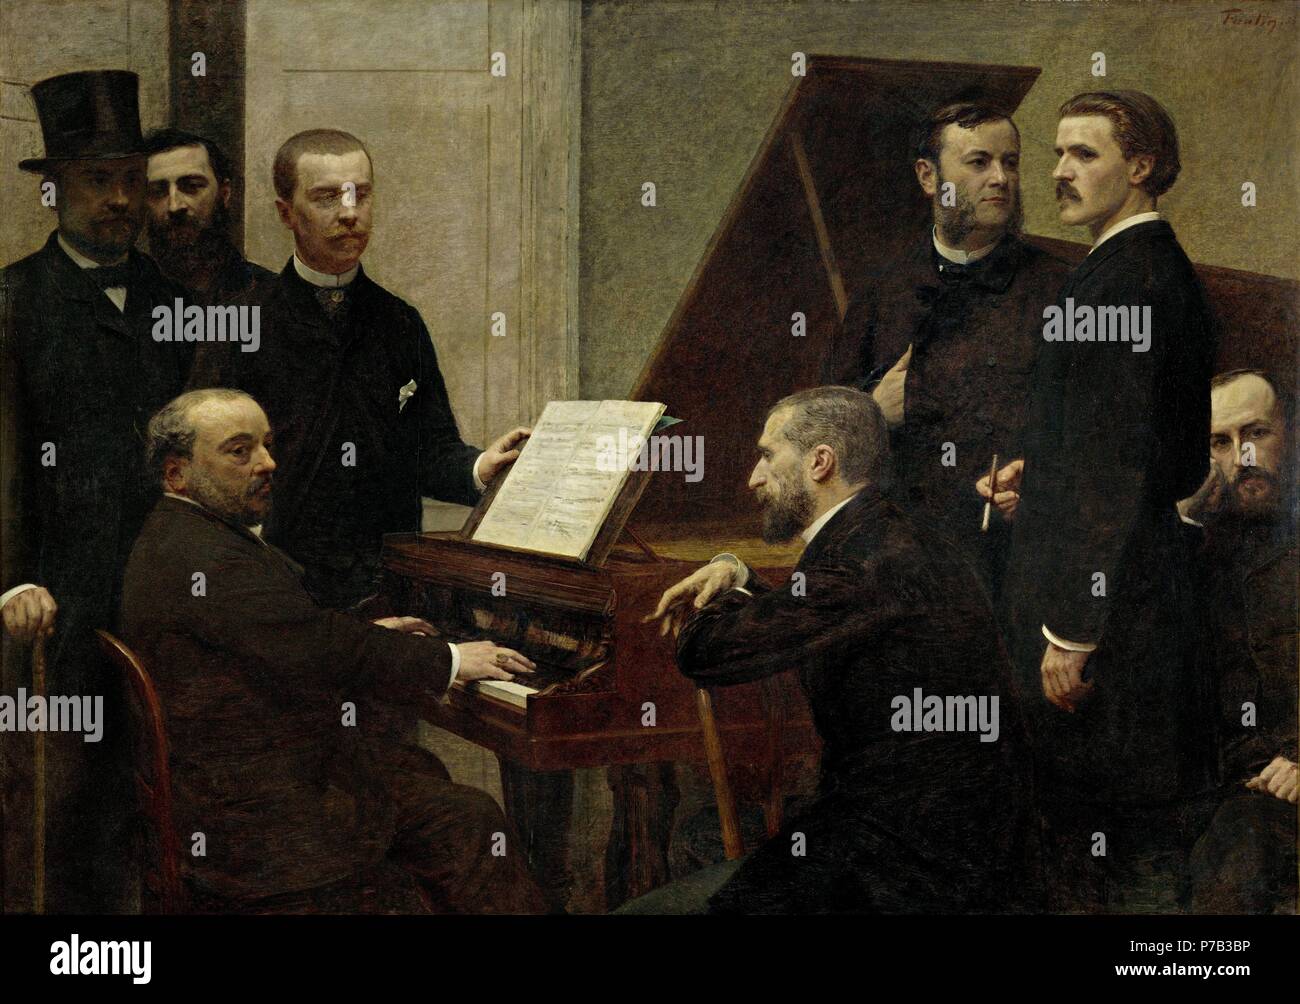 Henri Fantin-Latour/' um das Klavier (Emmanuel Chabrier am Klavier), 1885, Öl auf Leinwand, 160 x 222 cm. Artwork auch als: AUTOR DE PIANO bekannt. Museum: Musée d'Orsay. Stockfoto